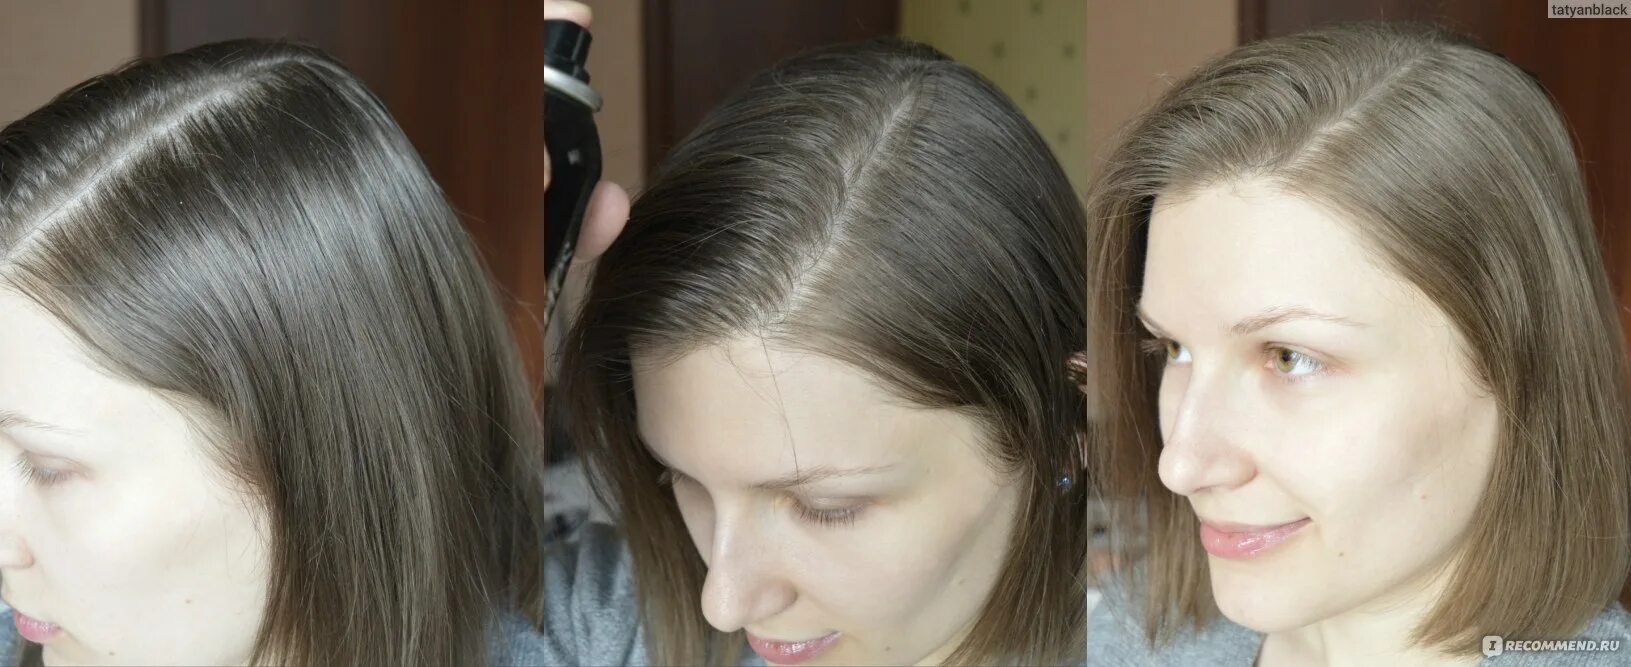 Чистые волосы до и после. Сухой шампунь до и после. Сухой шампунь для грязных волос. Грязные и чистые волосы. Маску на грязные или чистые волосы